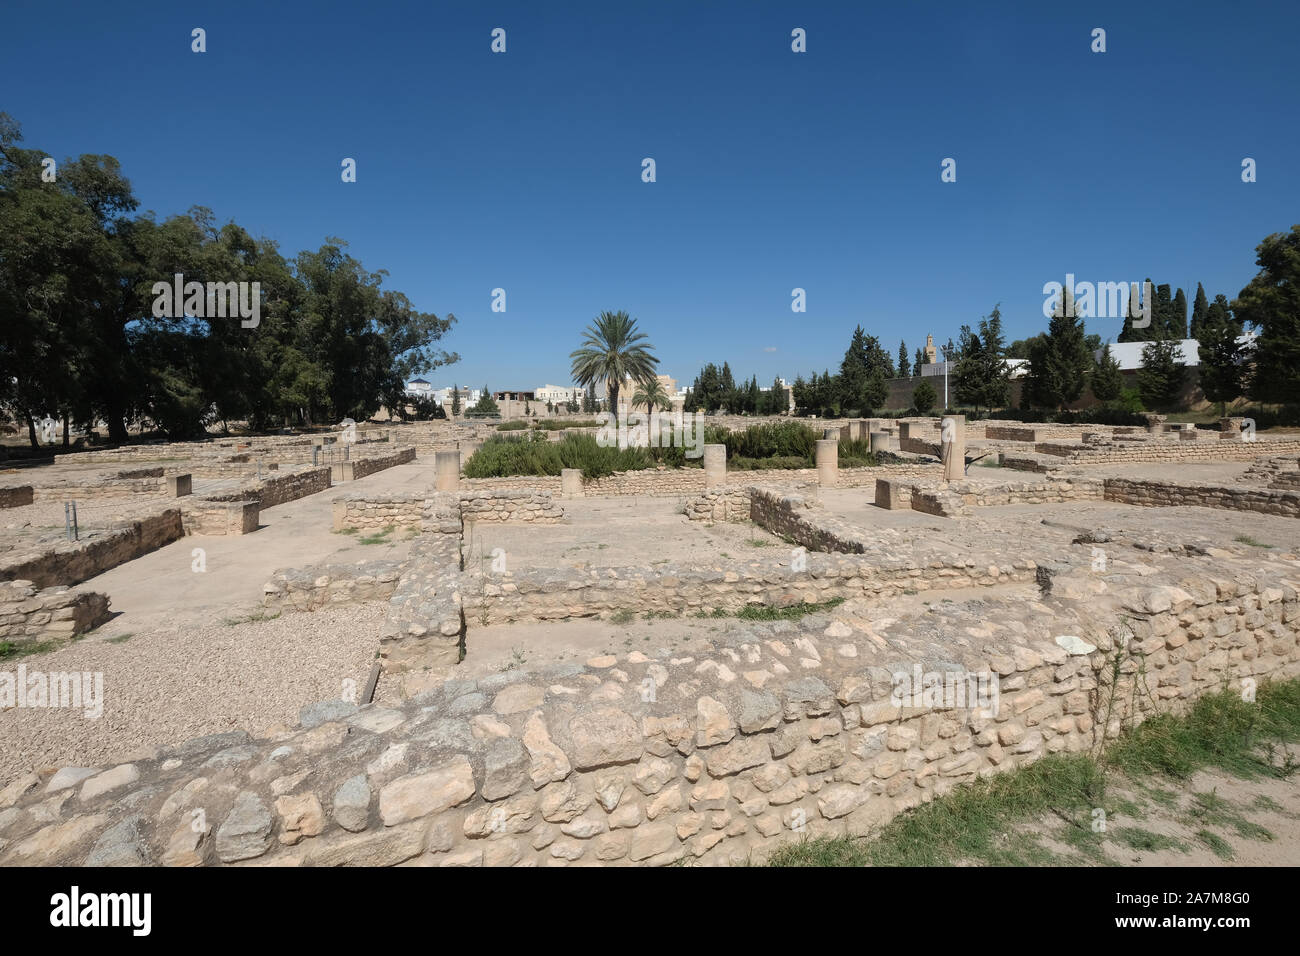 Ruinas romanas en los jardines del museo arqueológico de El Jem o El Djem,Túnez Foto de stock